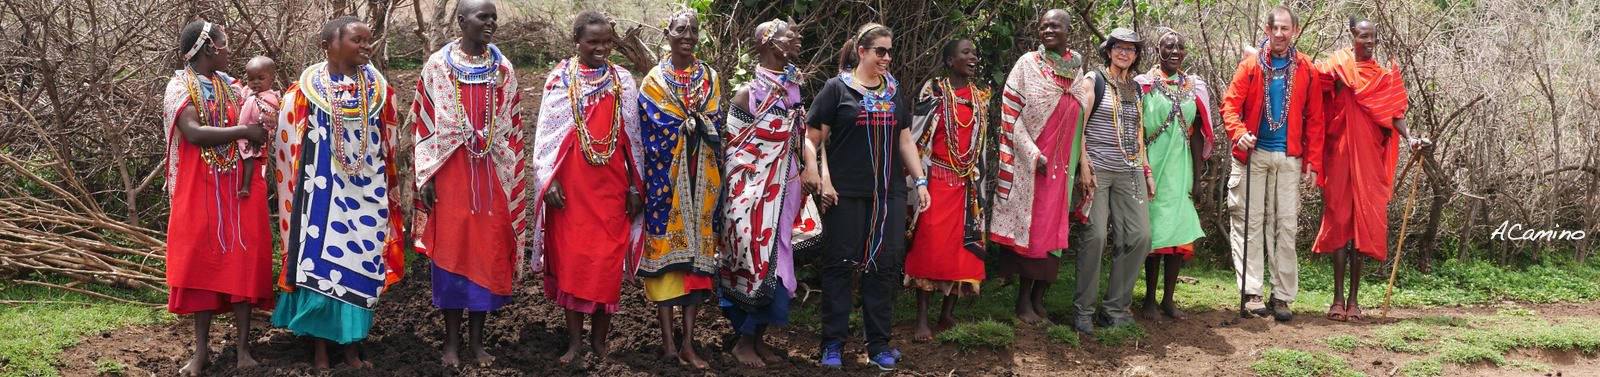 12 días de Safari en Kenia: Jambo bwana - Blogs de Kenia - Excursion a pie por el rio Mara y visita a los Masais (32)